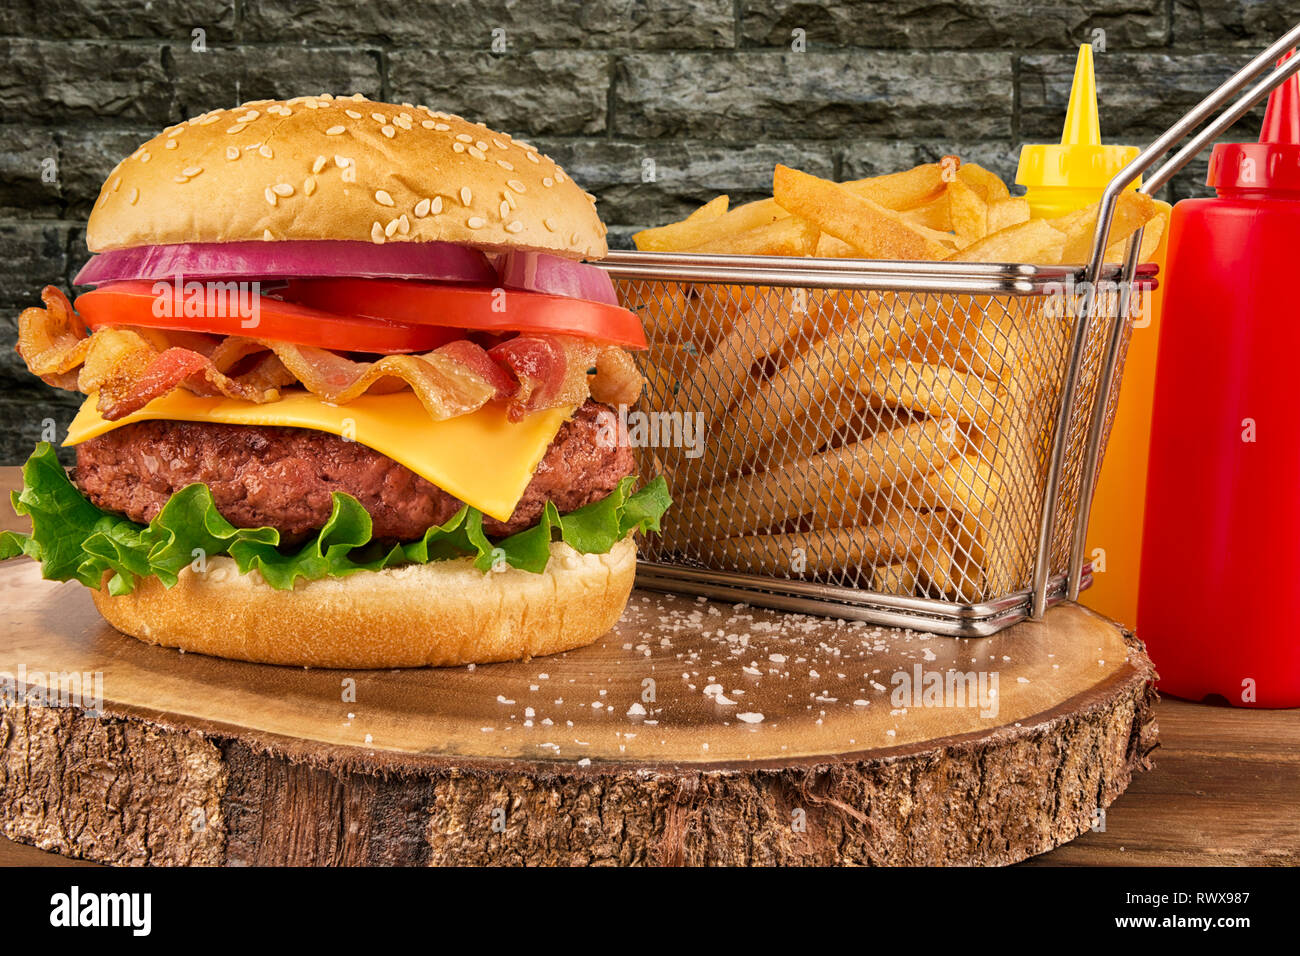 Cheeseburger con polpetta di carne di manzo e pancetta. Patate fritte nel cestello, ketchup e senape bottiglia in background. Isolato su un muro di mattoni. Real close up. Foto Stock